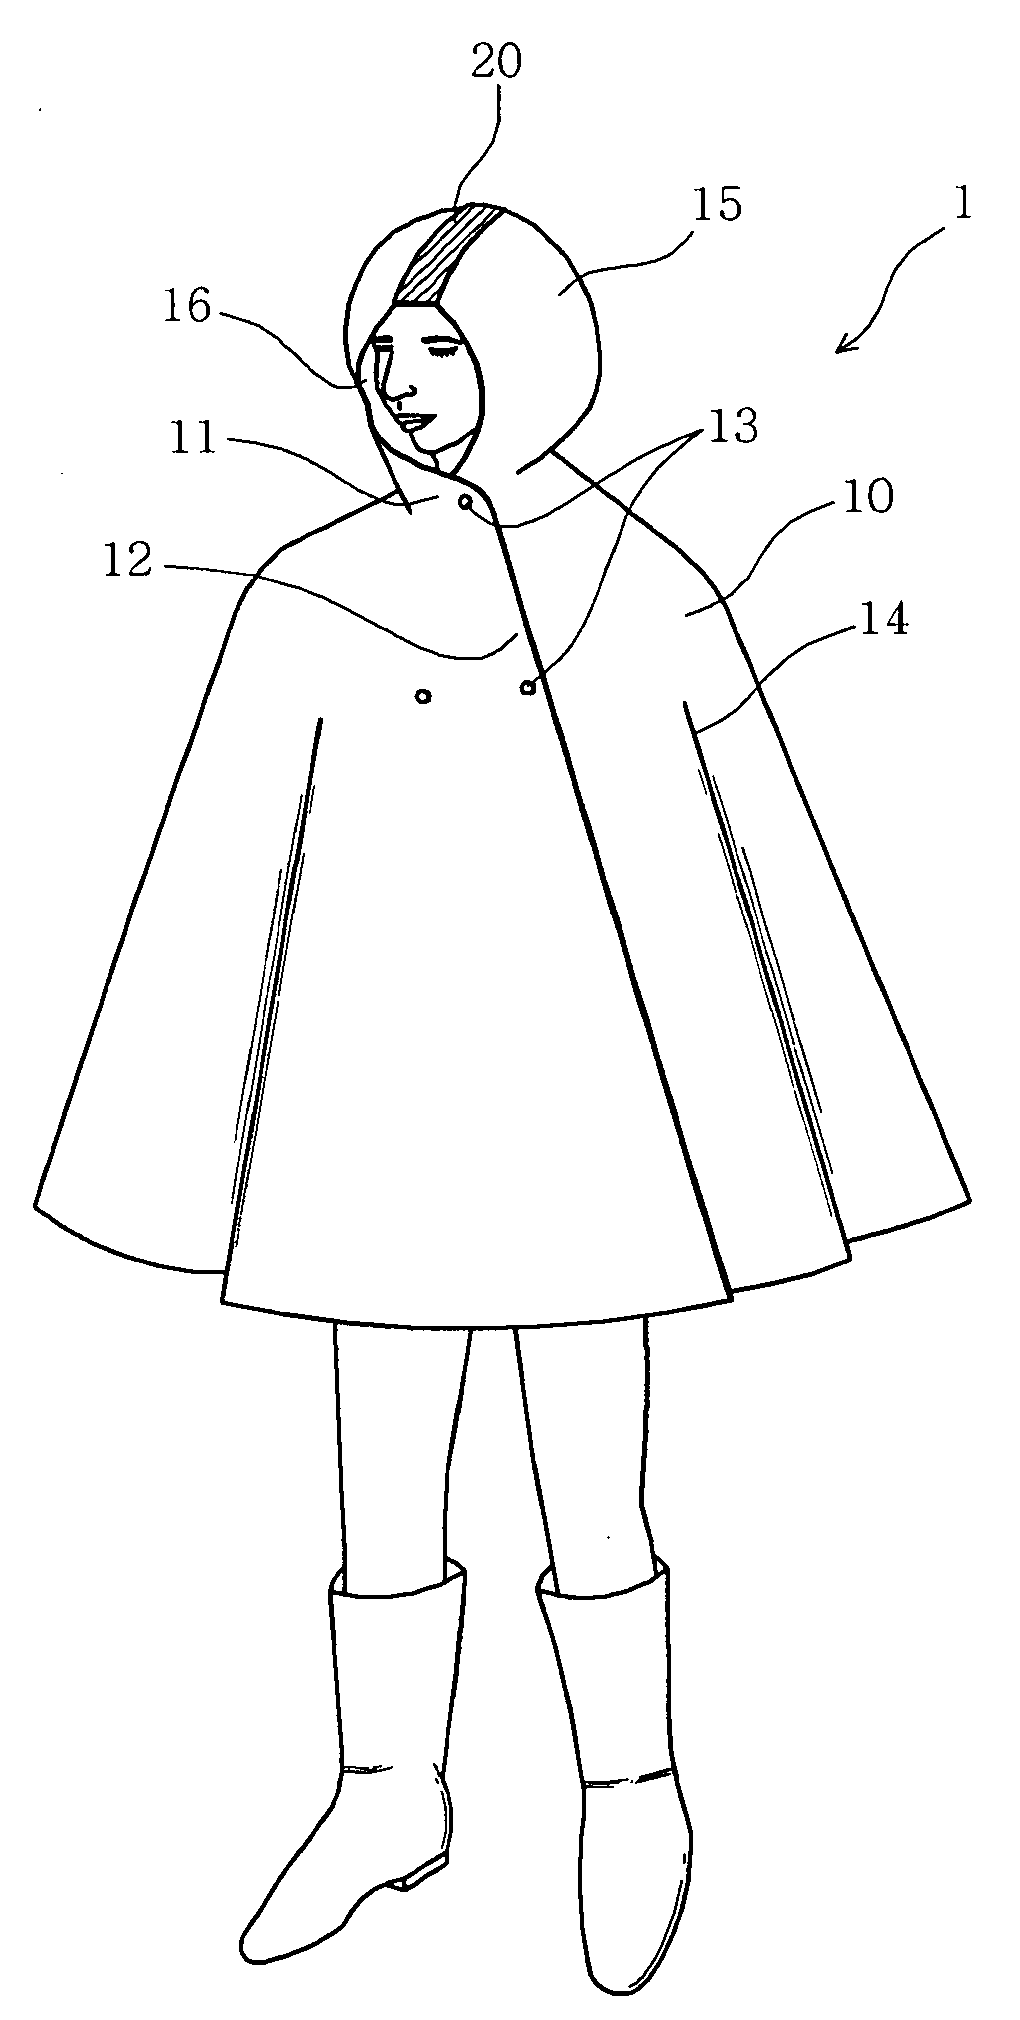 Cloak-type raincoat